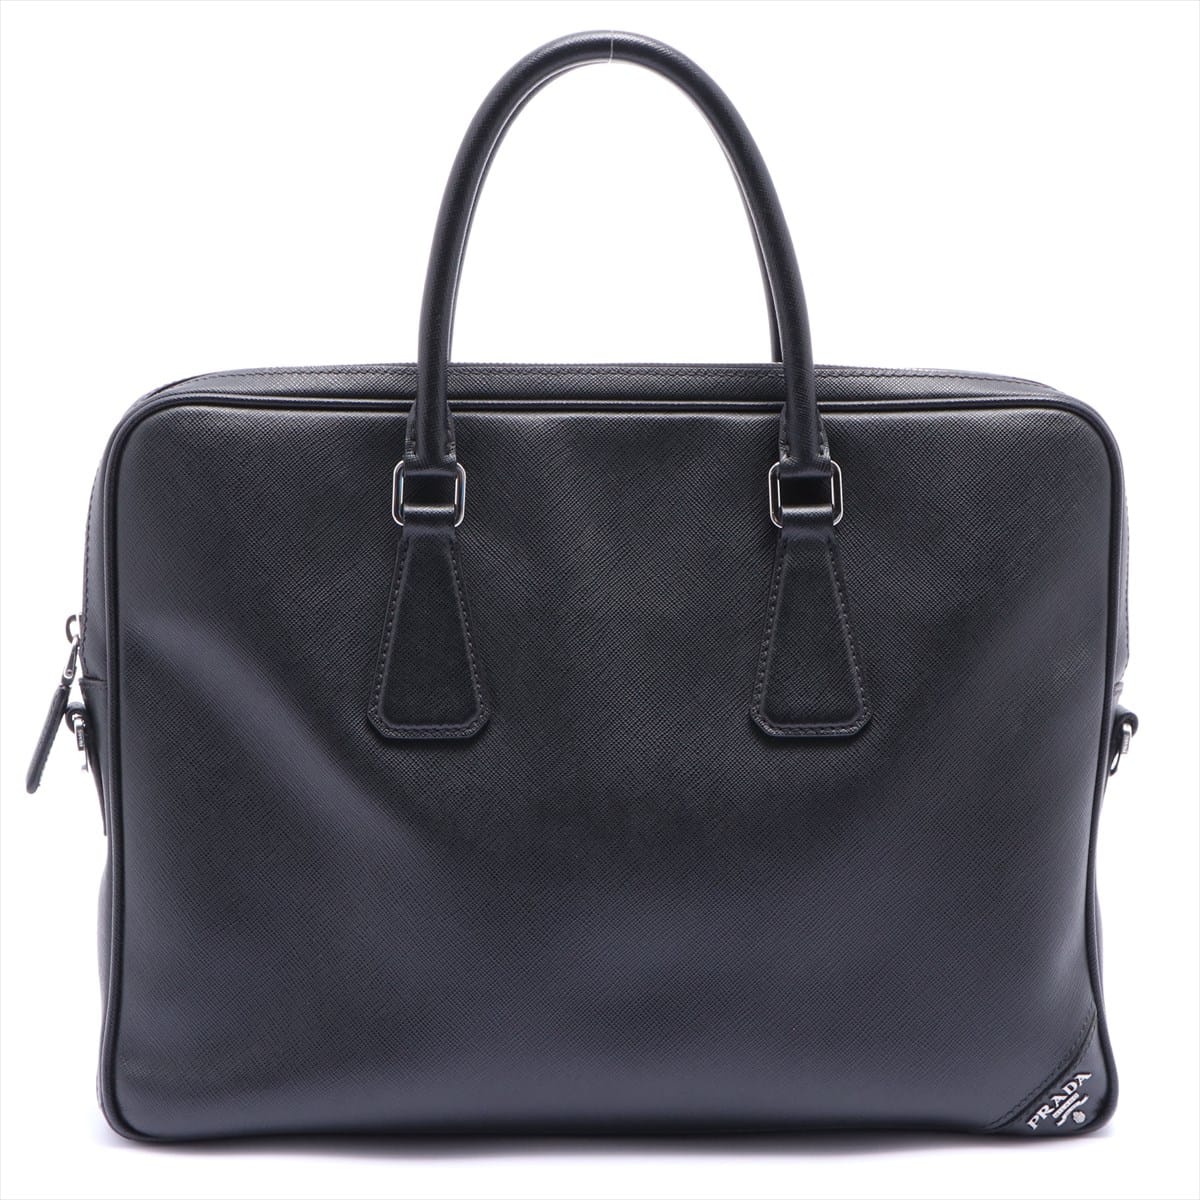 Prada Saffiano Business bag Black